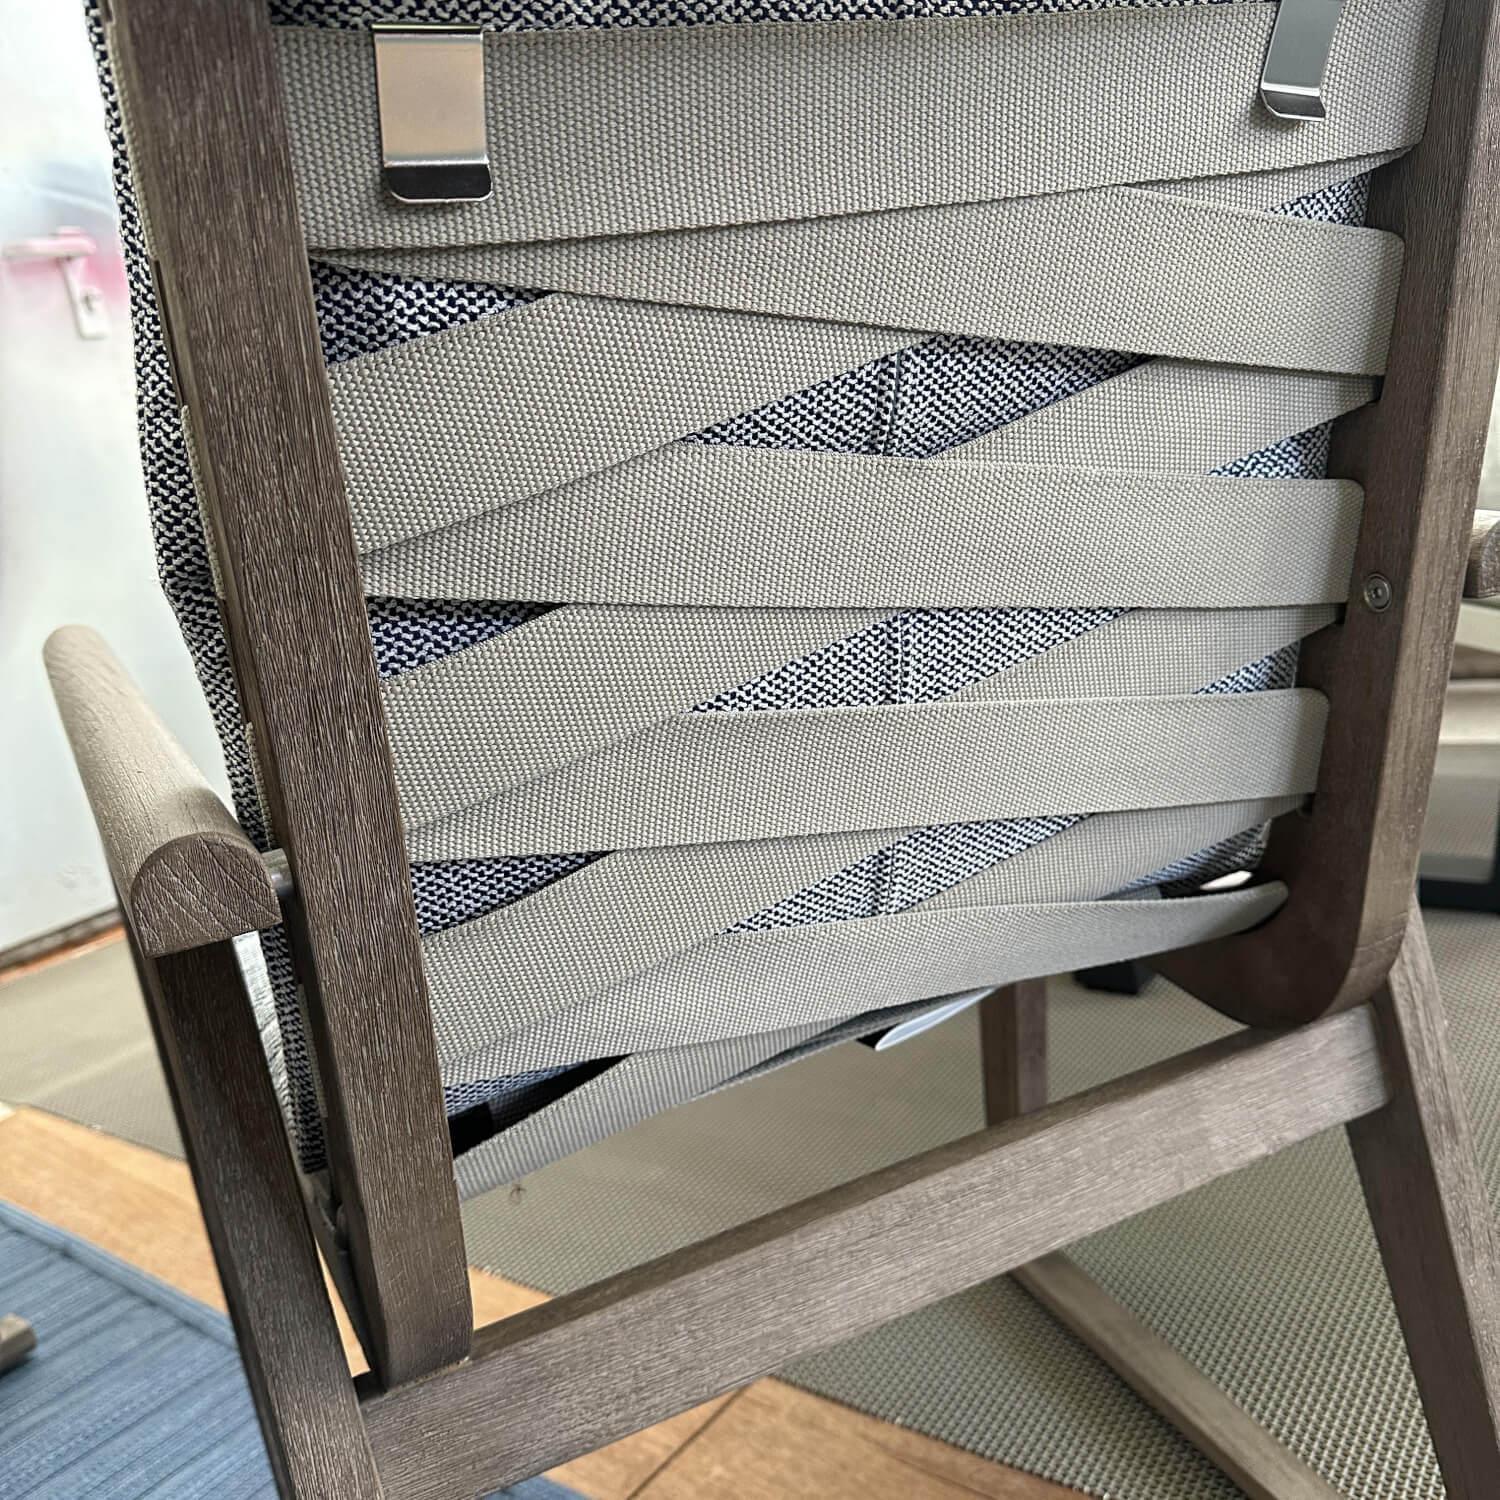 Essgruppe Gio Outdoor Teak Antique Grey Stühle Bezug Stoff Ecate Blau Weiß